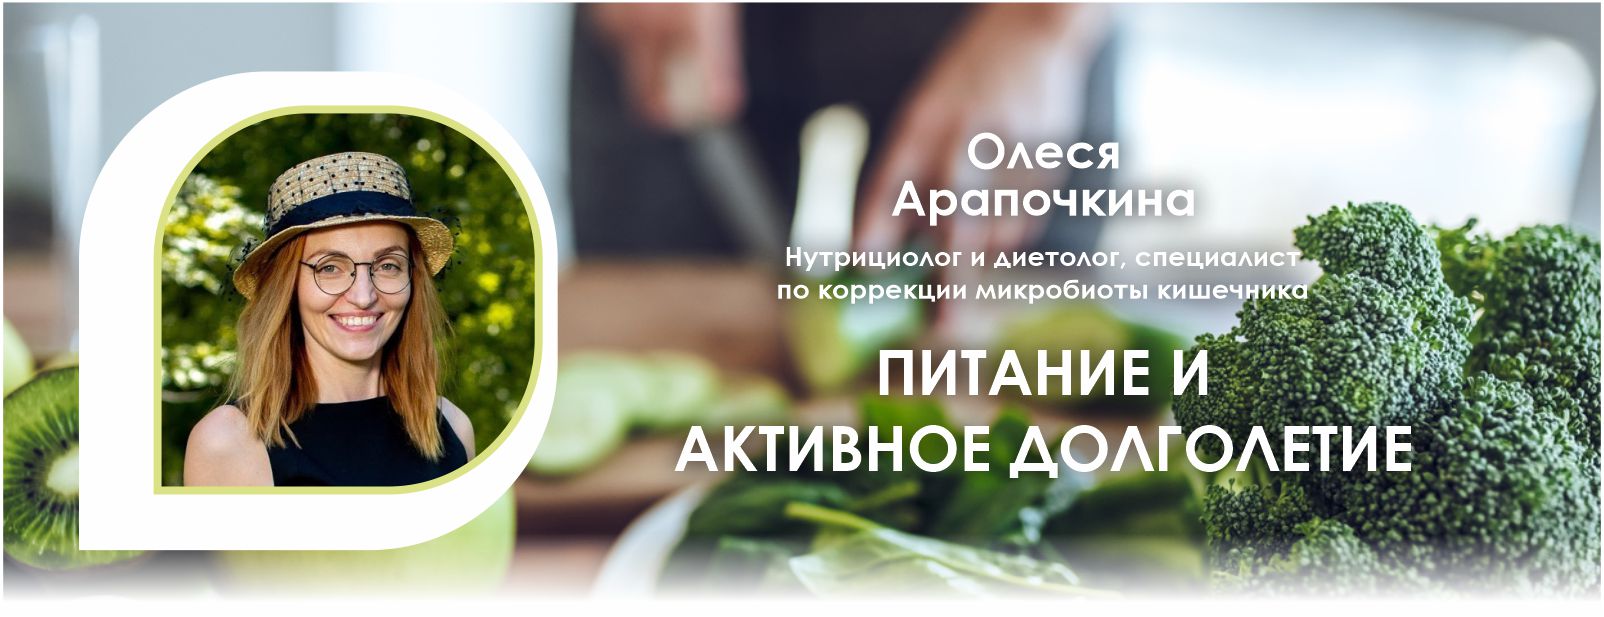 Вебинар компании Fucoidan World «Питание и активное долголетие», ведущая Олеся Арапочкина.